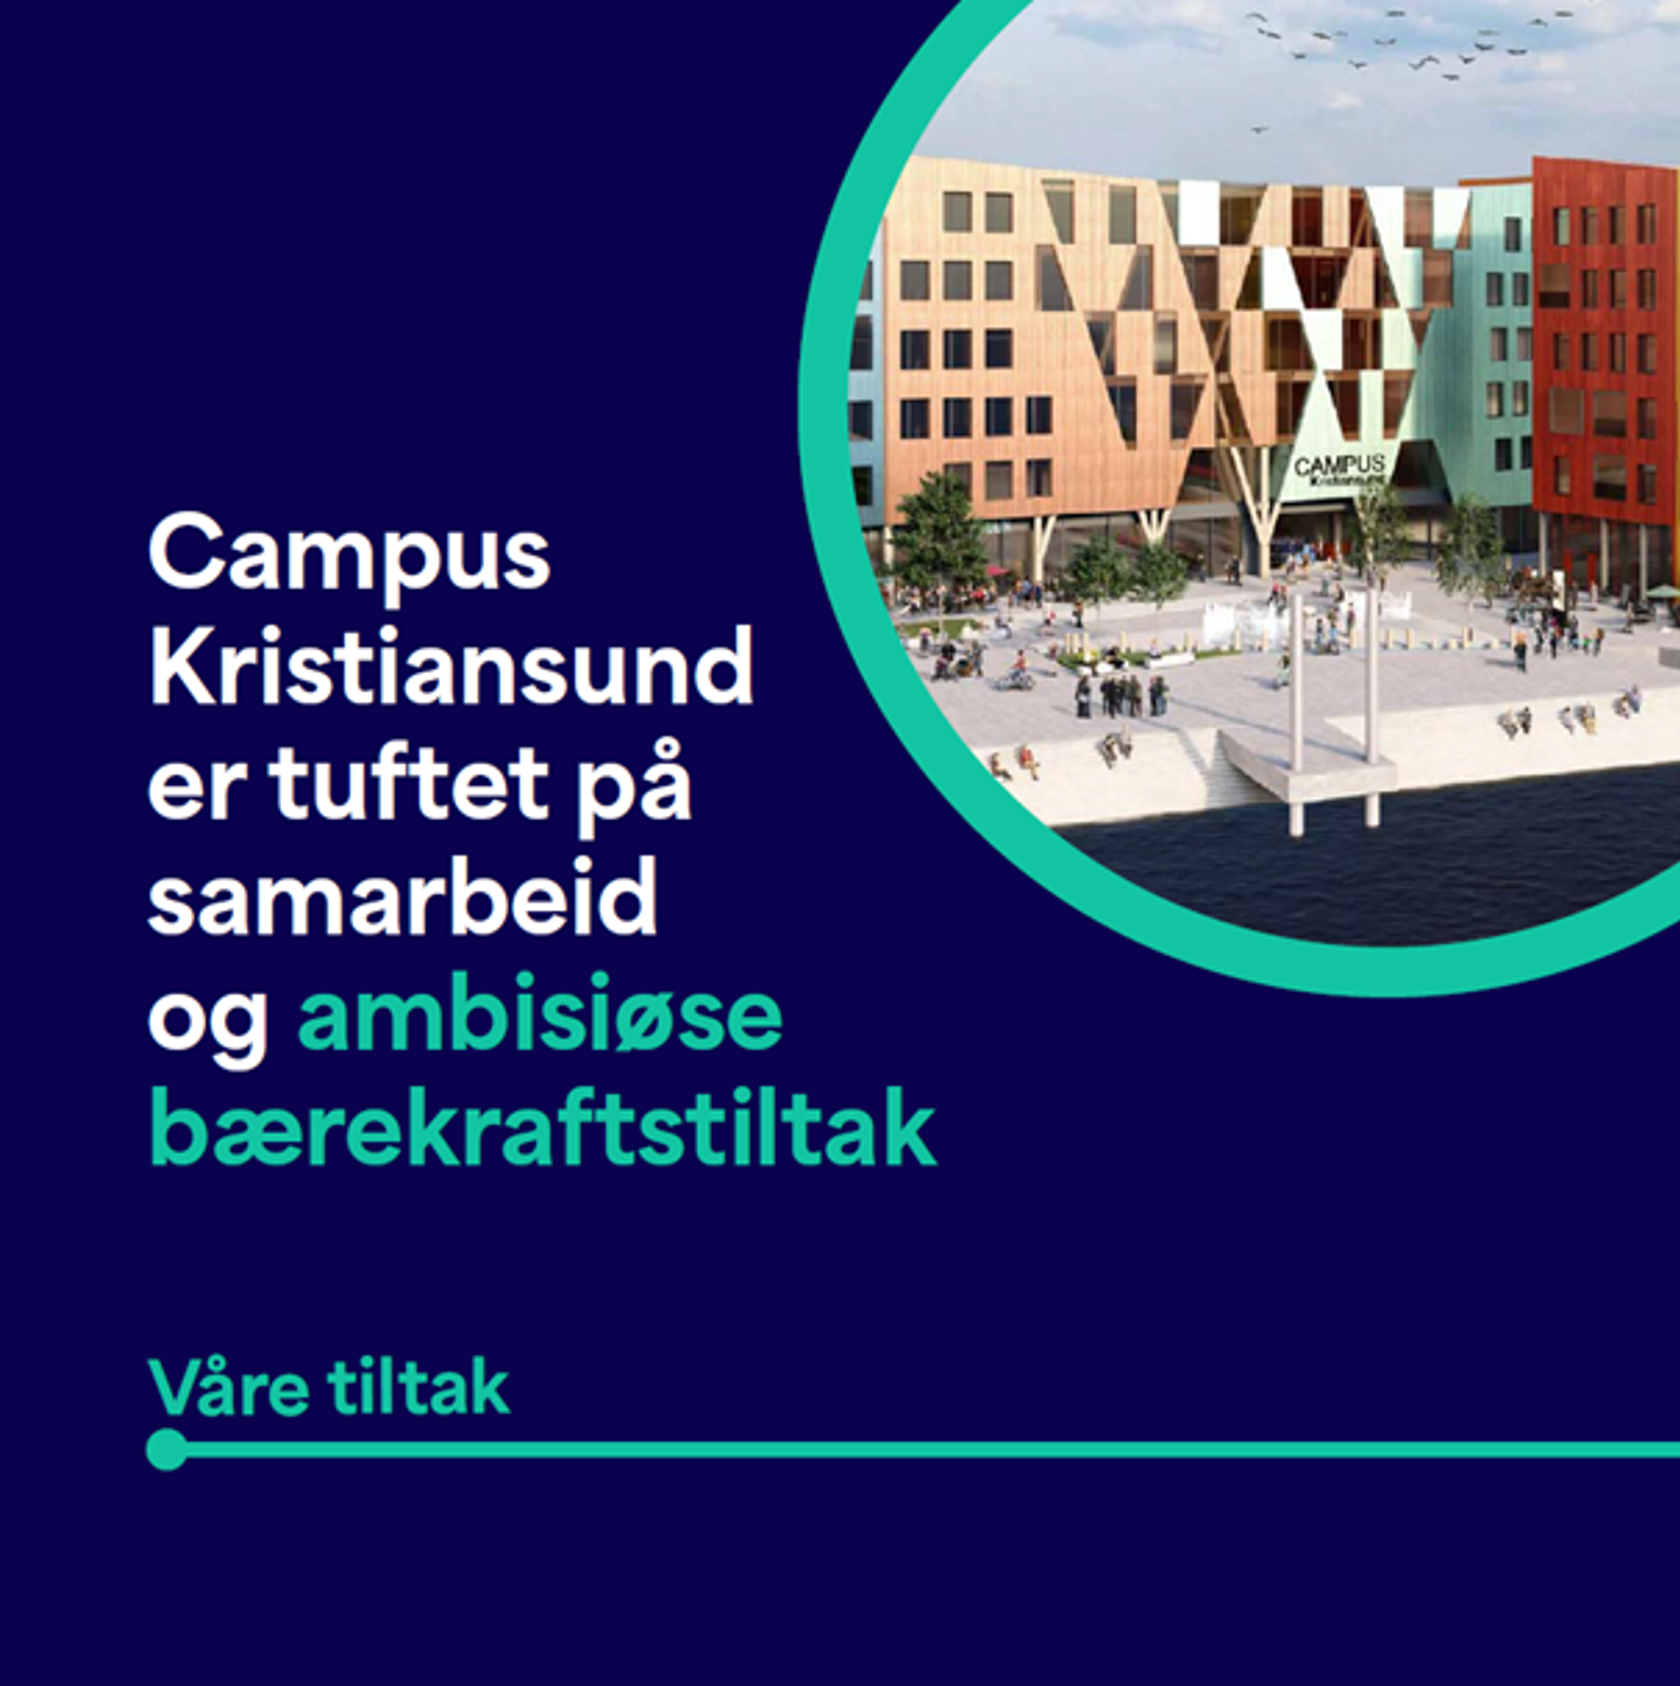 Grafikk: Campus Kristiansund er tuftet på samarbeid og ambisiøse bærekraftstiltak